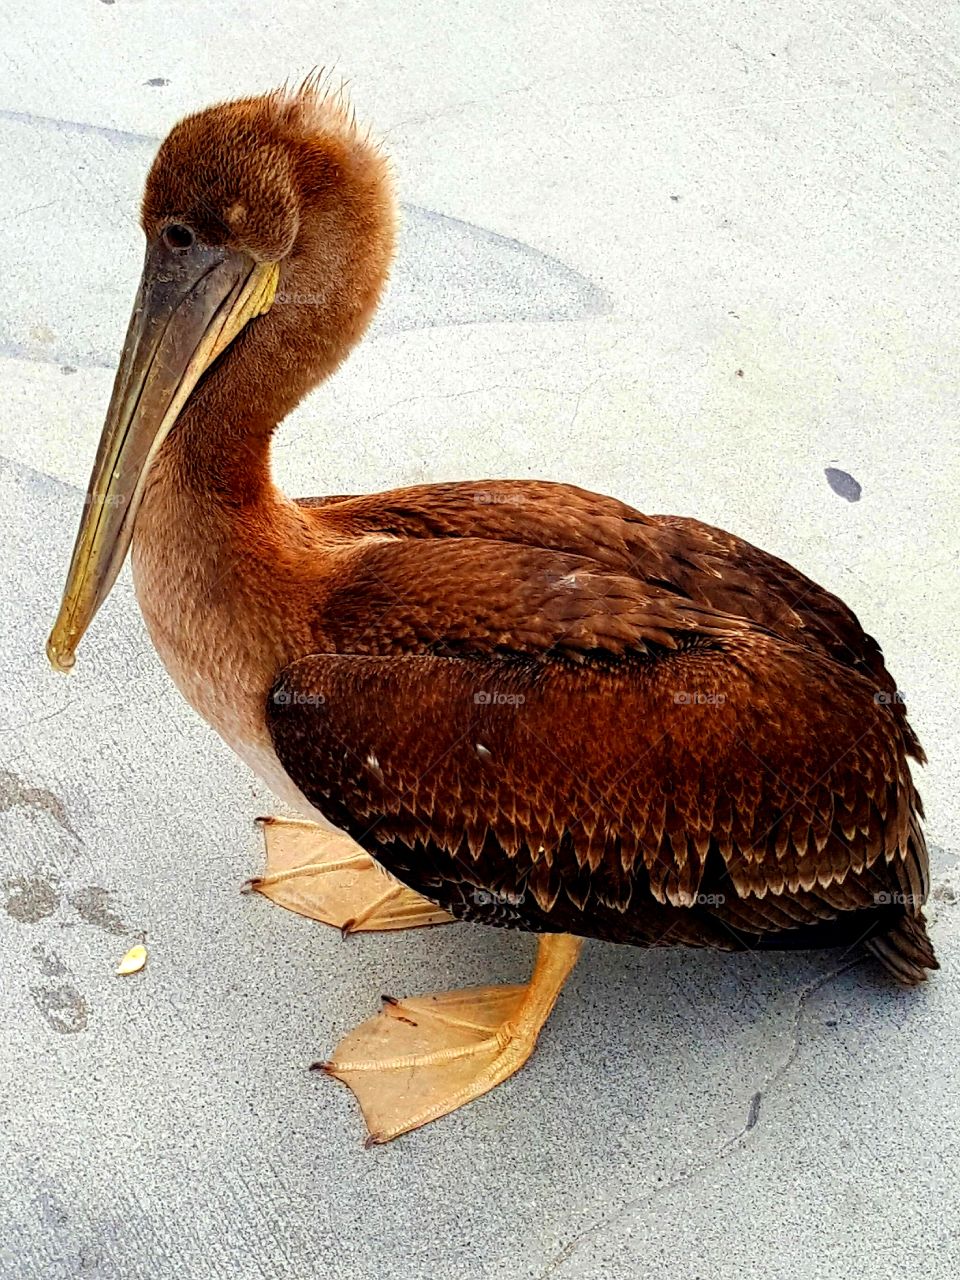 A pelican reest